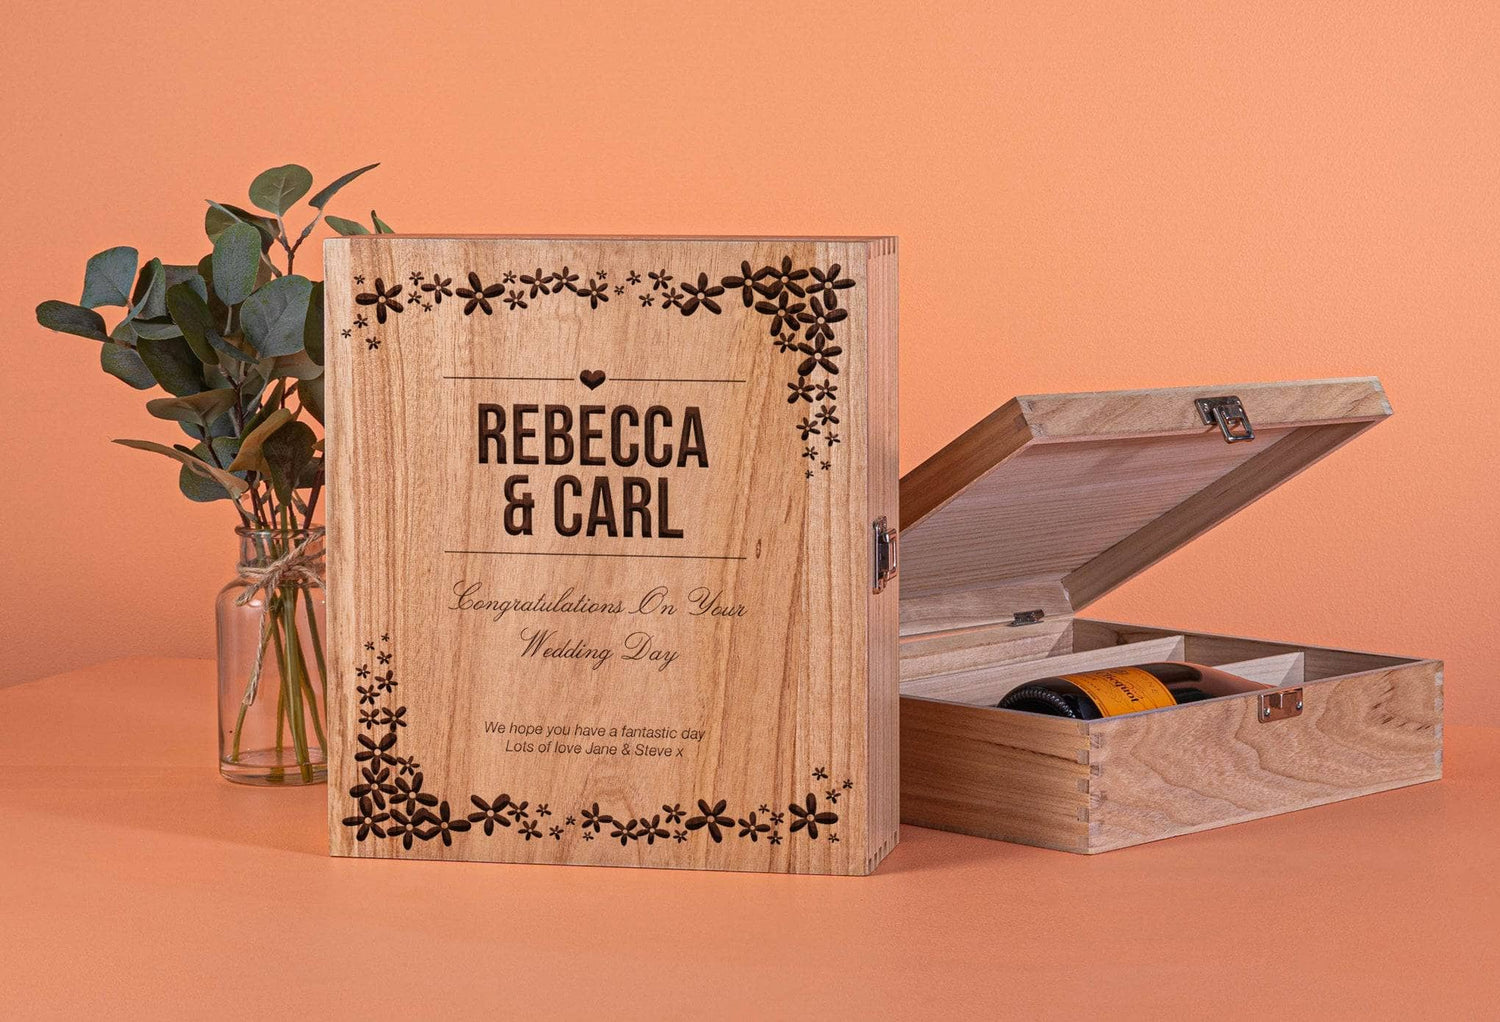 Peach Hampers The Three Bottle Wedding Wine Box - Flower Design